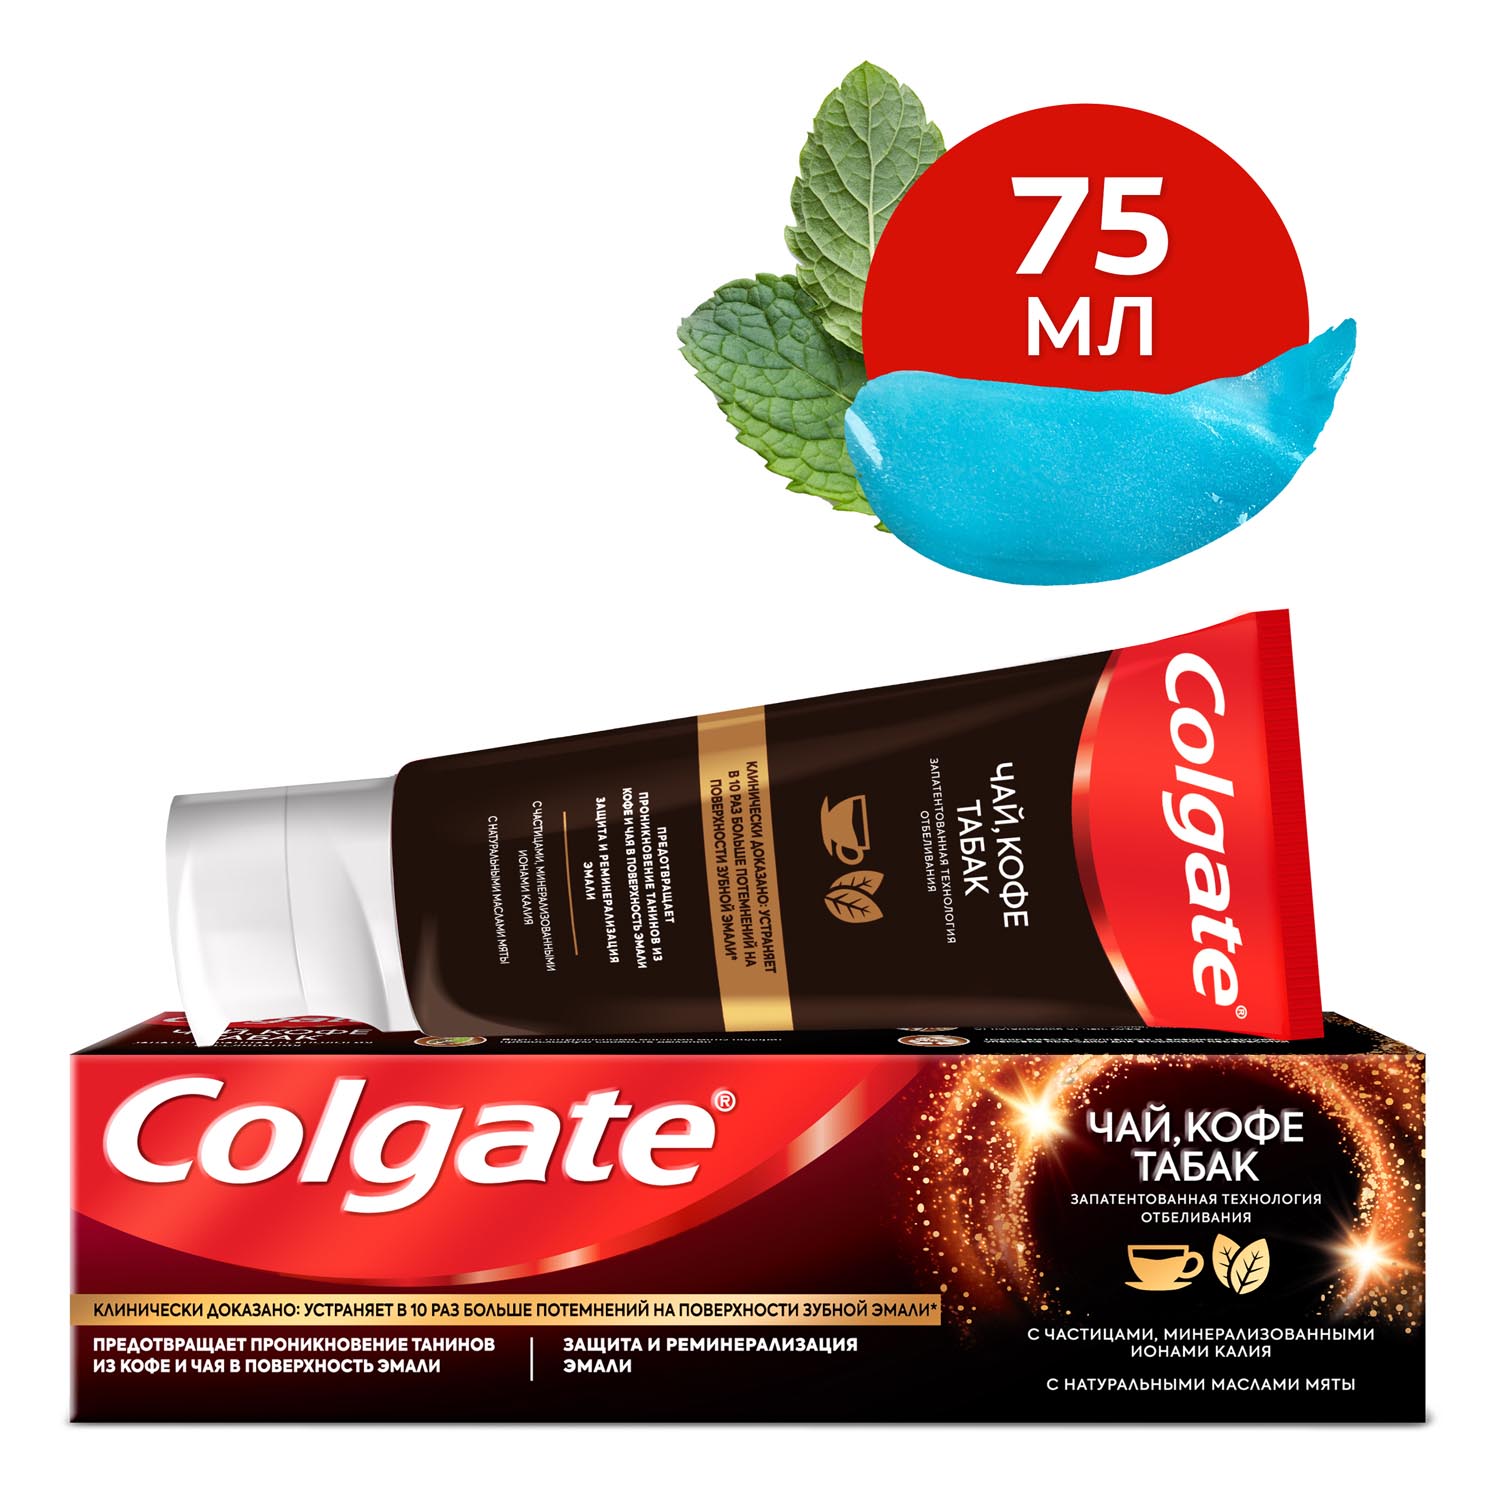 Зубная паста Colgate чай, кофе, табак отбеливающая с натуральными маслами мяты, 75 мл зубная паста r o c s кофе и табак 74мл